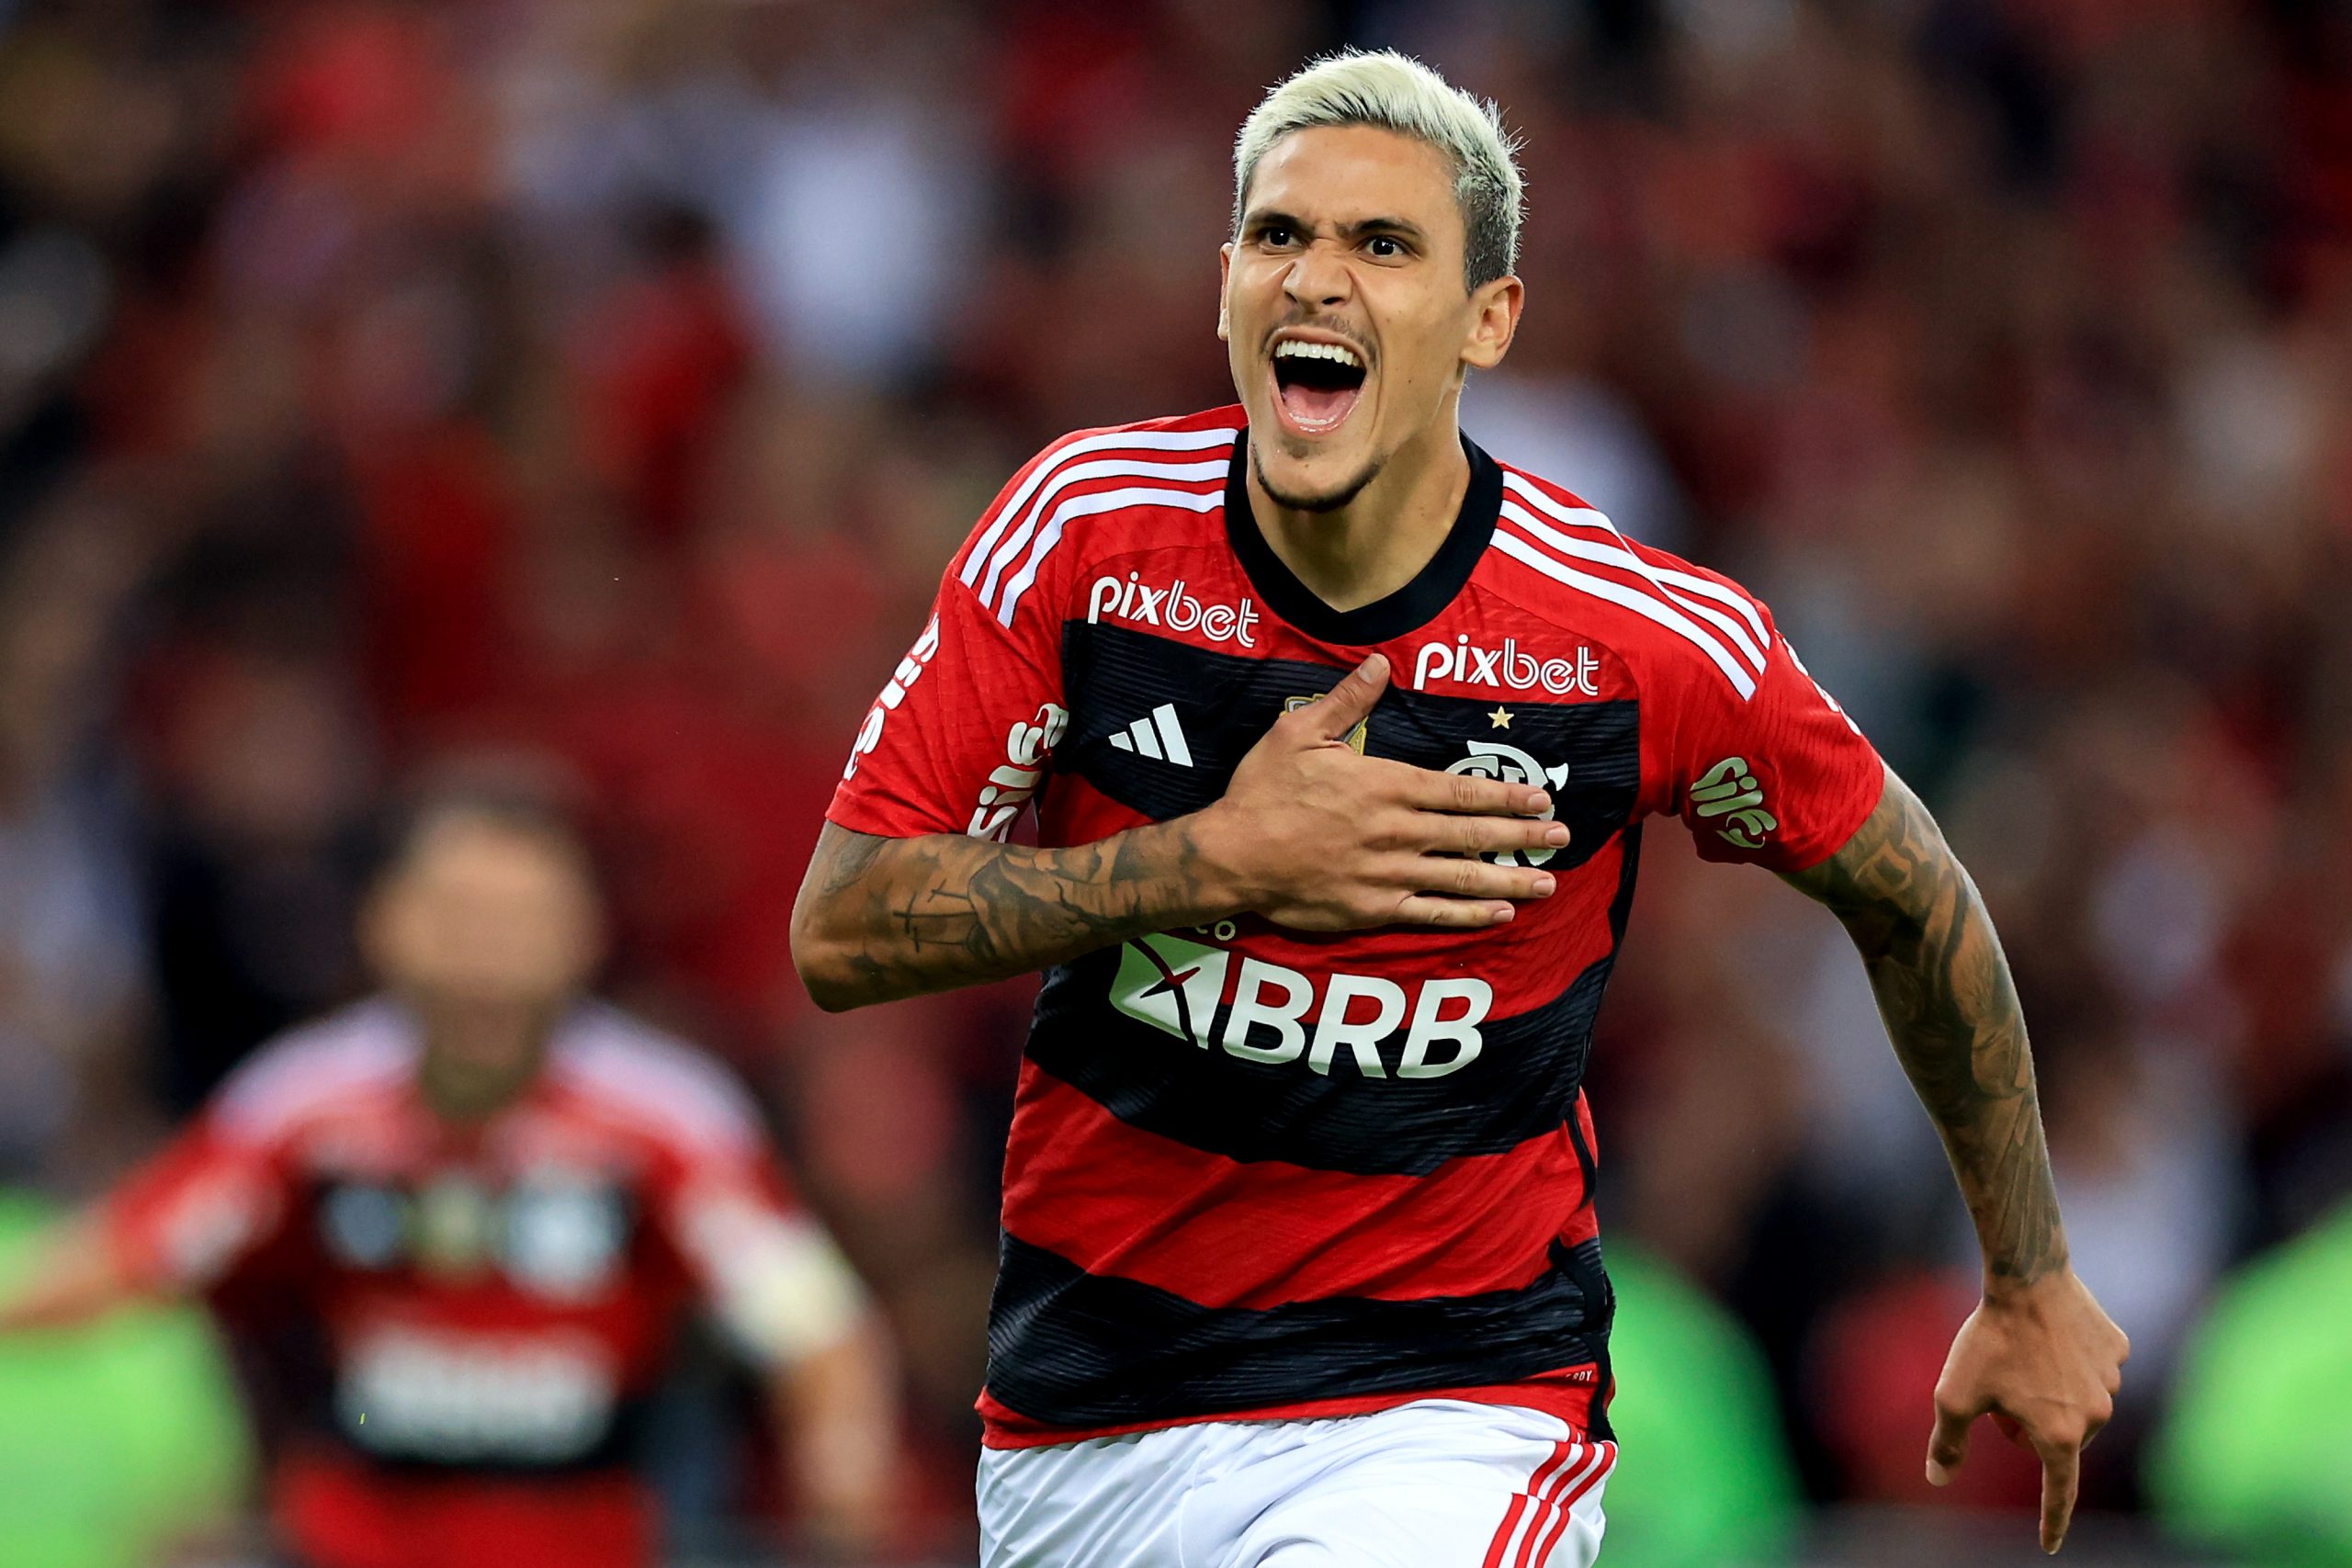 Flamengo negocia contratação de Claudinho, do Zenit